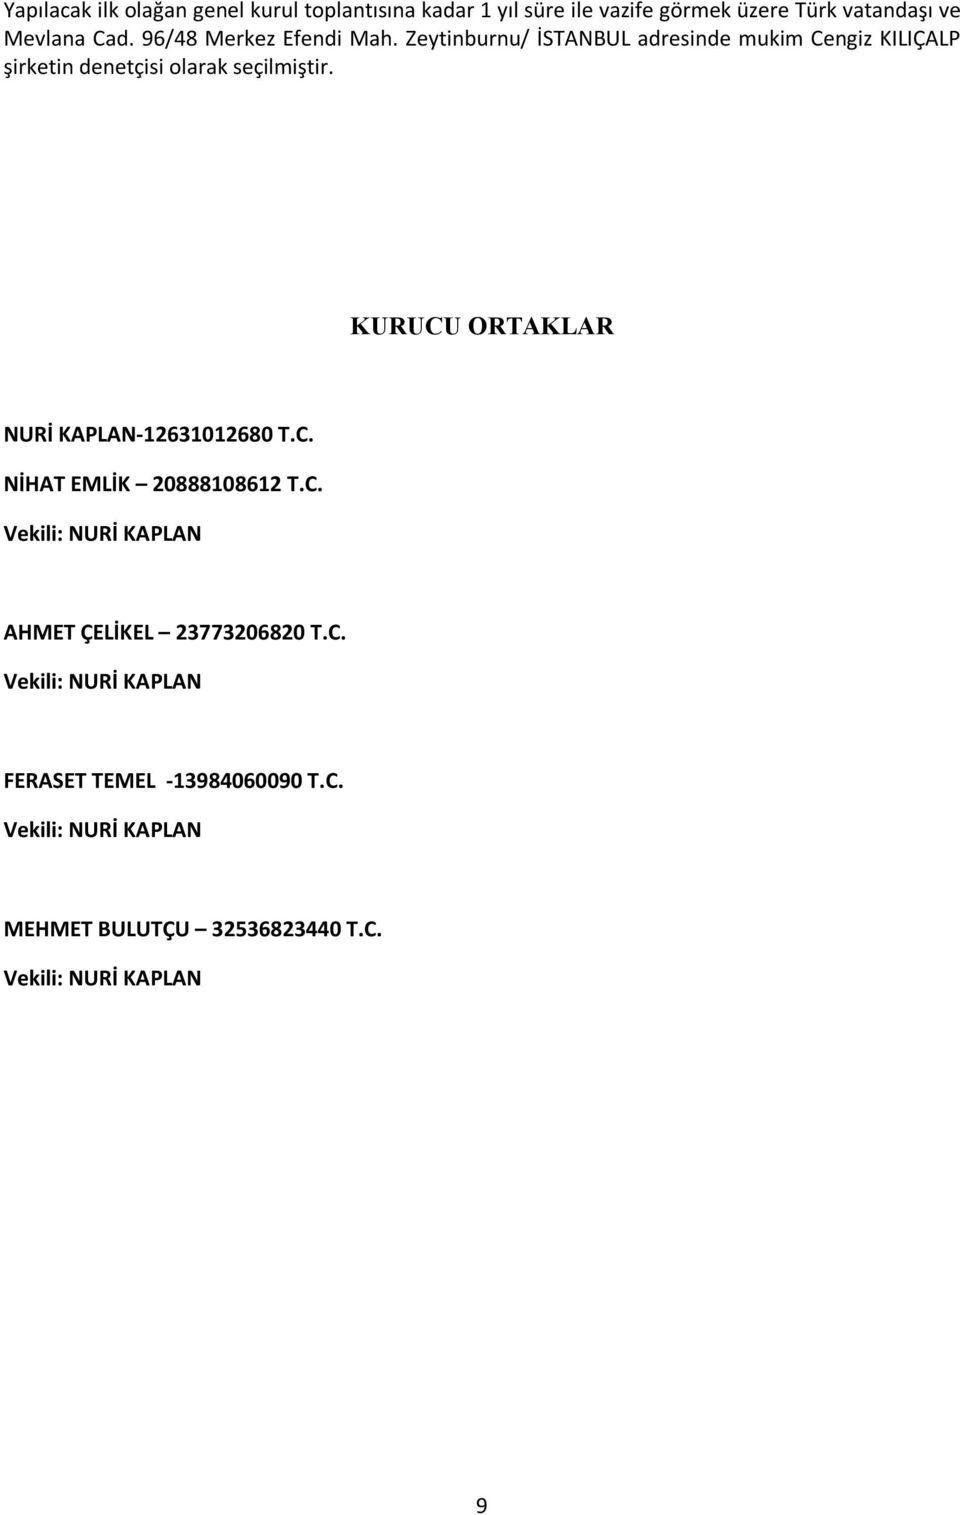 Zeytinburnu/ İSTANBUL adresinde mukim Cengiz KILIÇALP şirketin denetçisi olarak seçilmiştir.